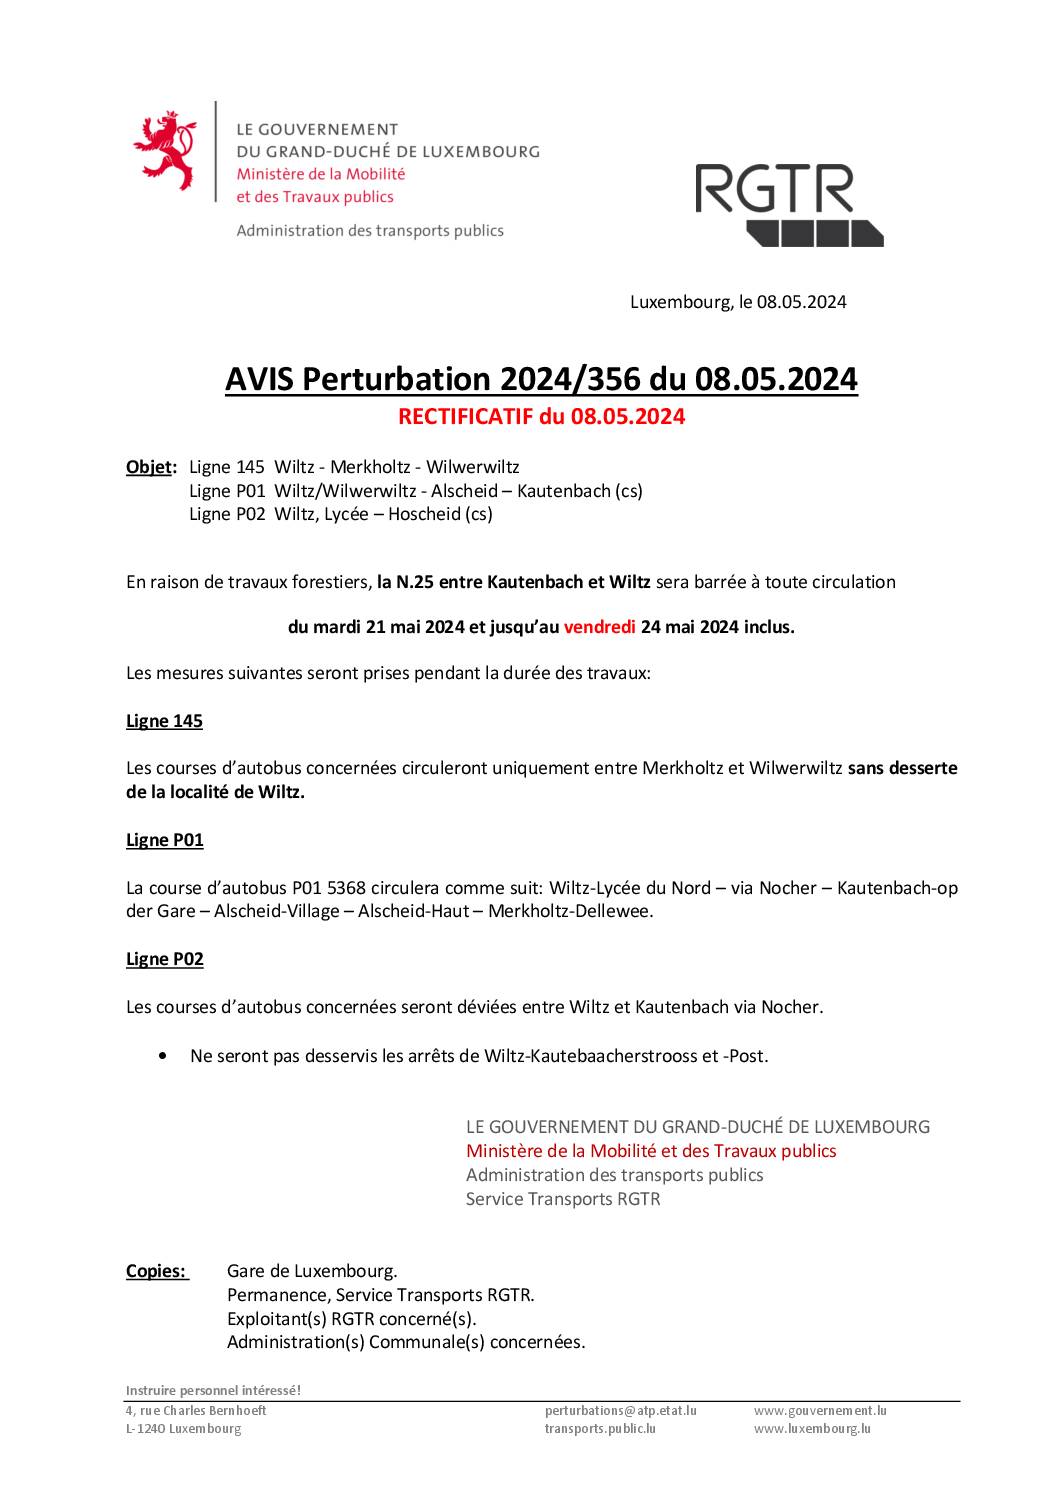 RGTR - Avis perturbation - 21.05 au 24.05 entre Kautenbach et Wiltz